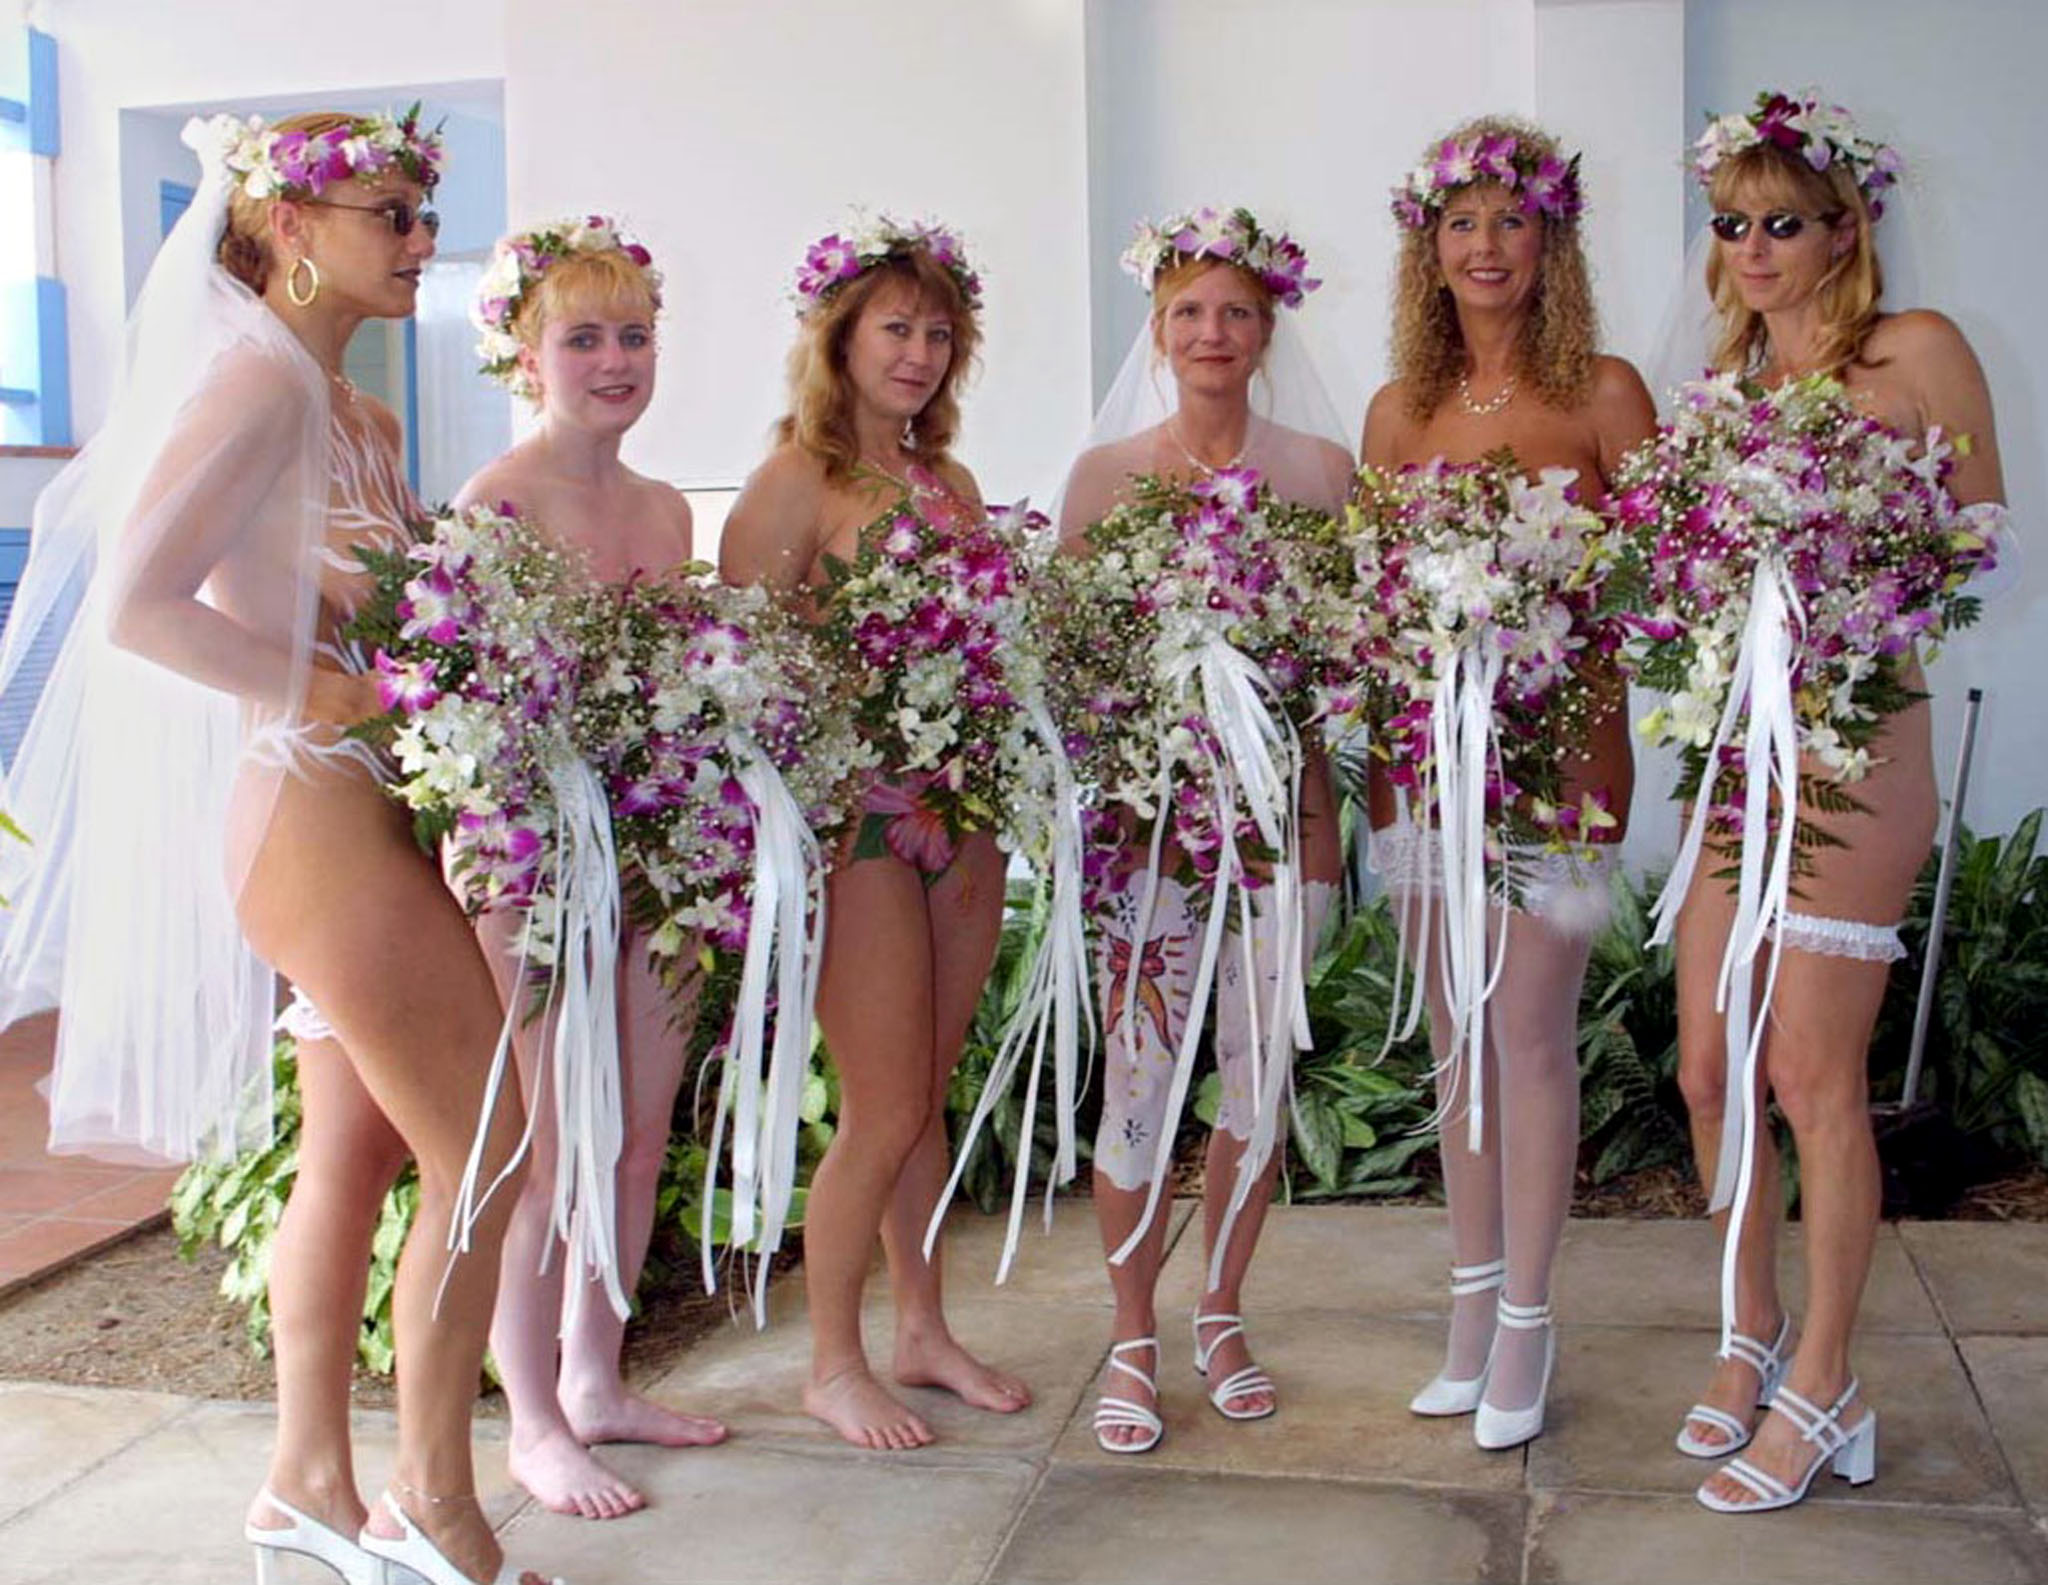 Bride nude wedding